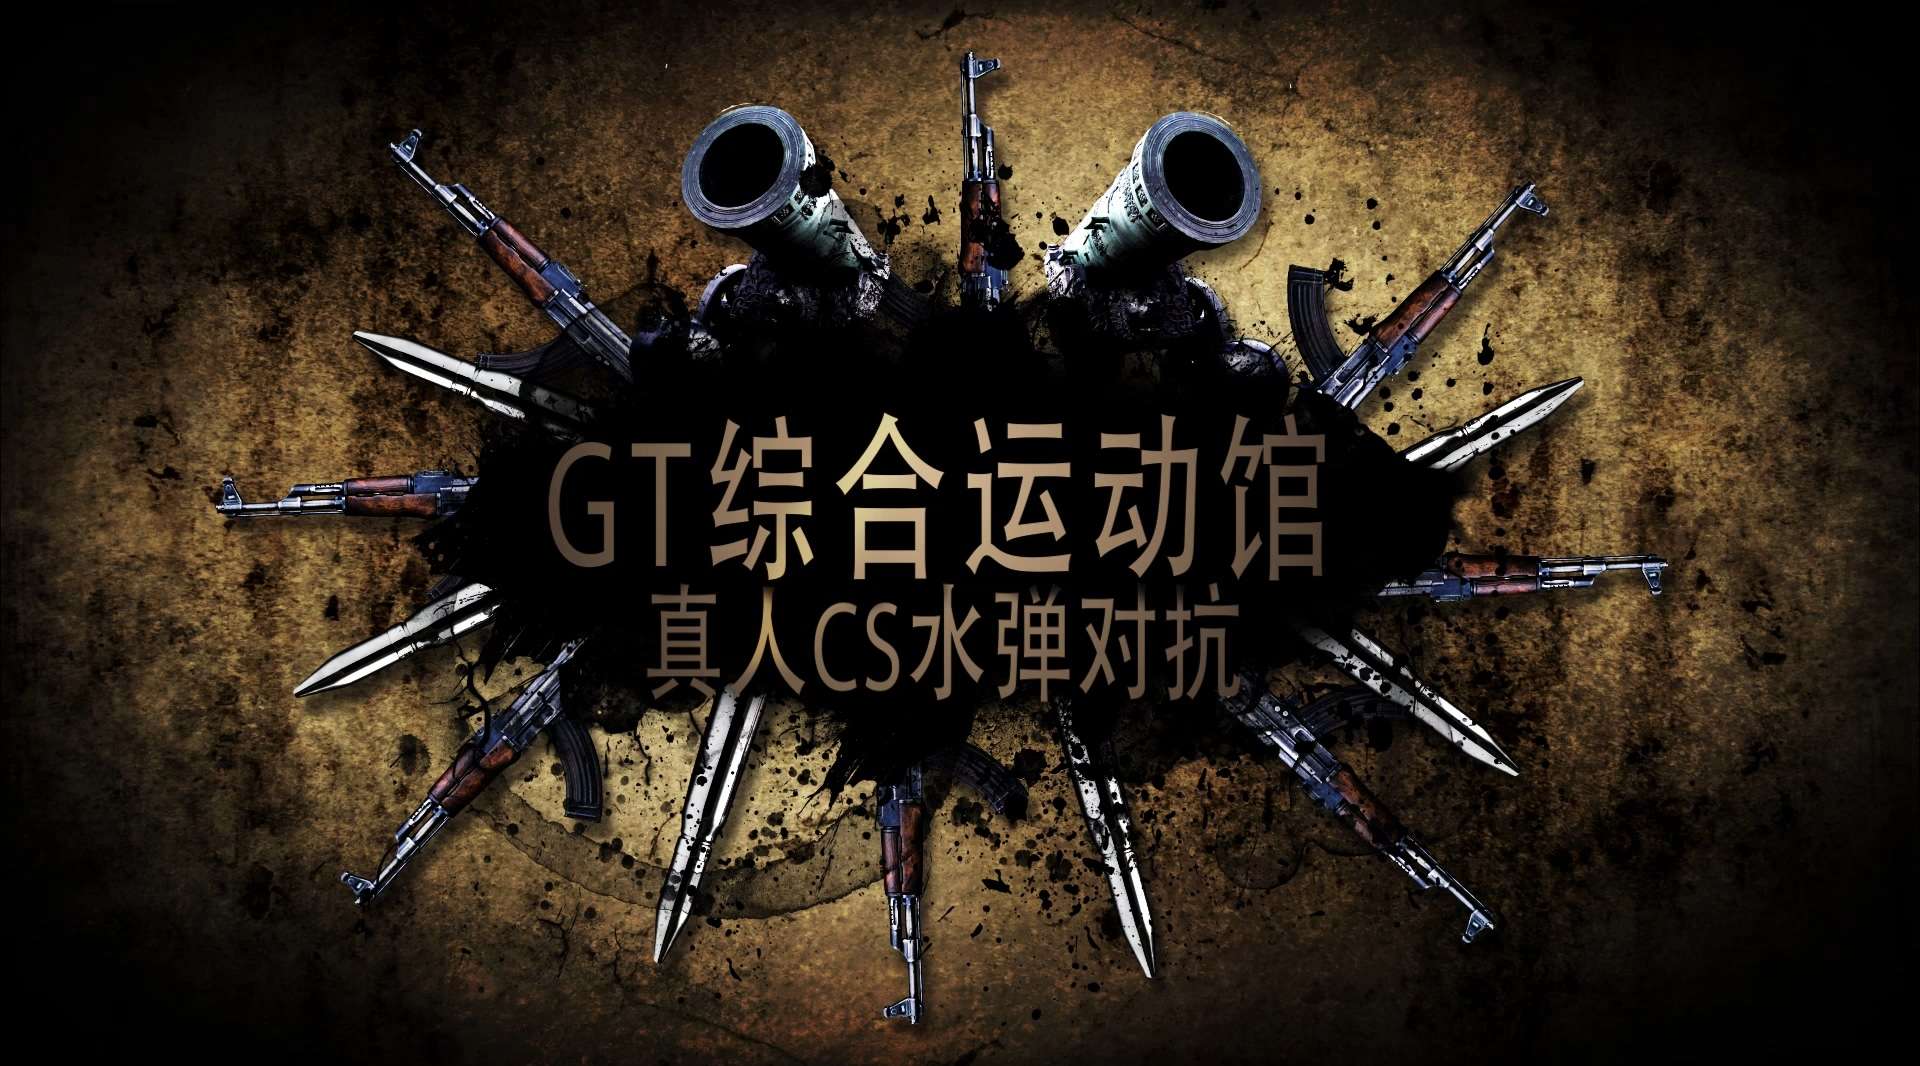 【维客出品】GT综合运动馆 - 真人CS水弹对抗